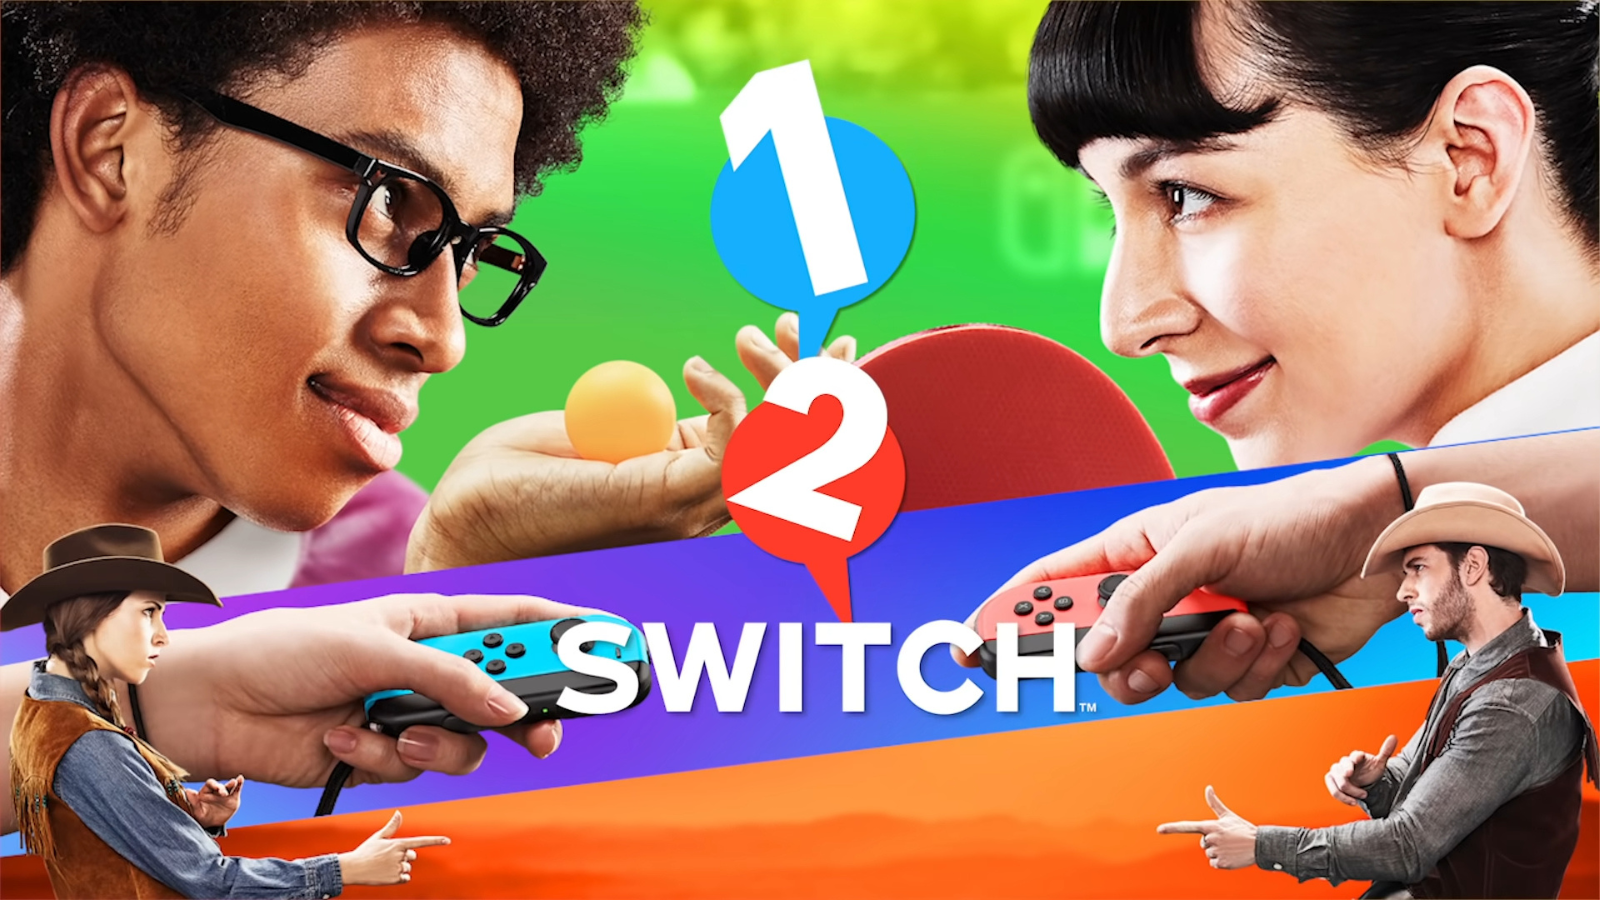 1-2-switch nintendo nintendo switch